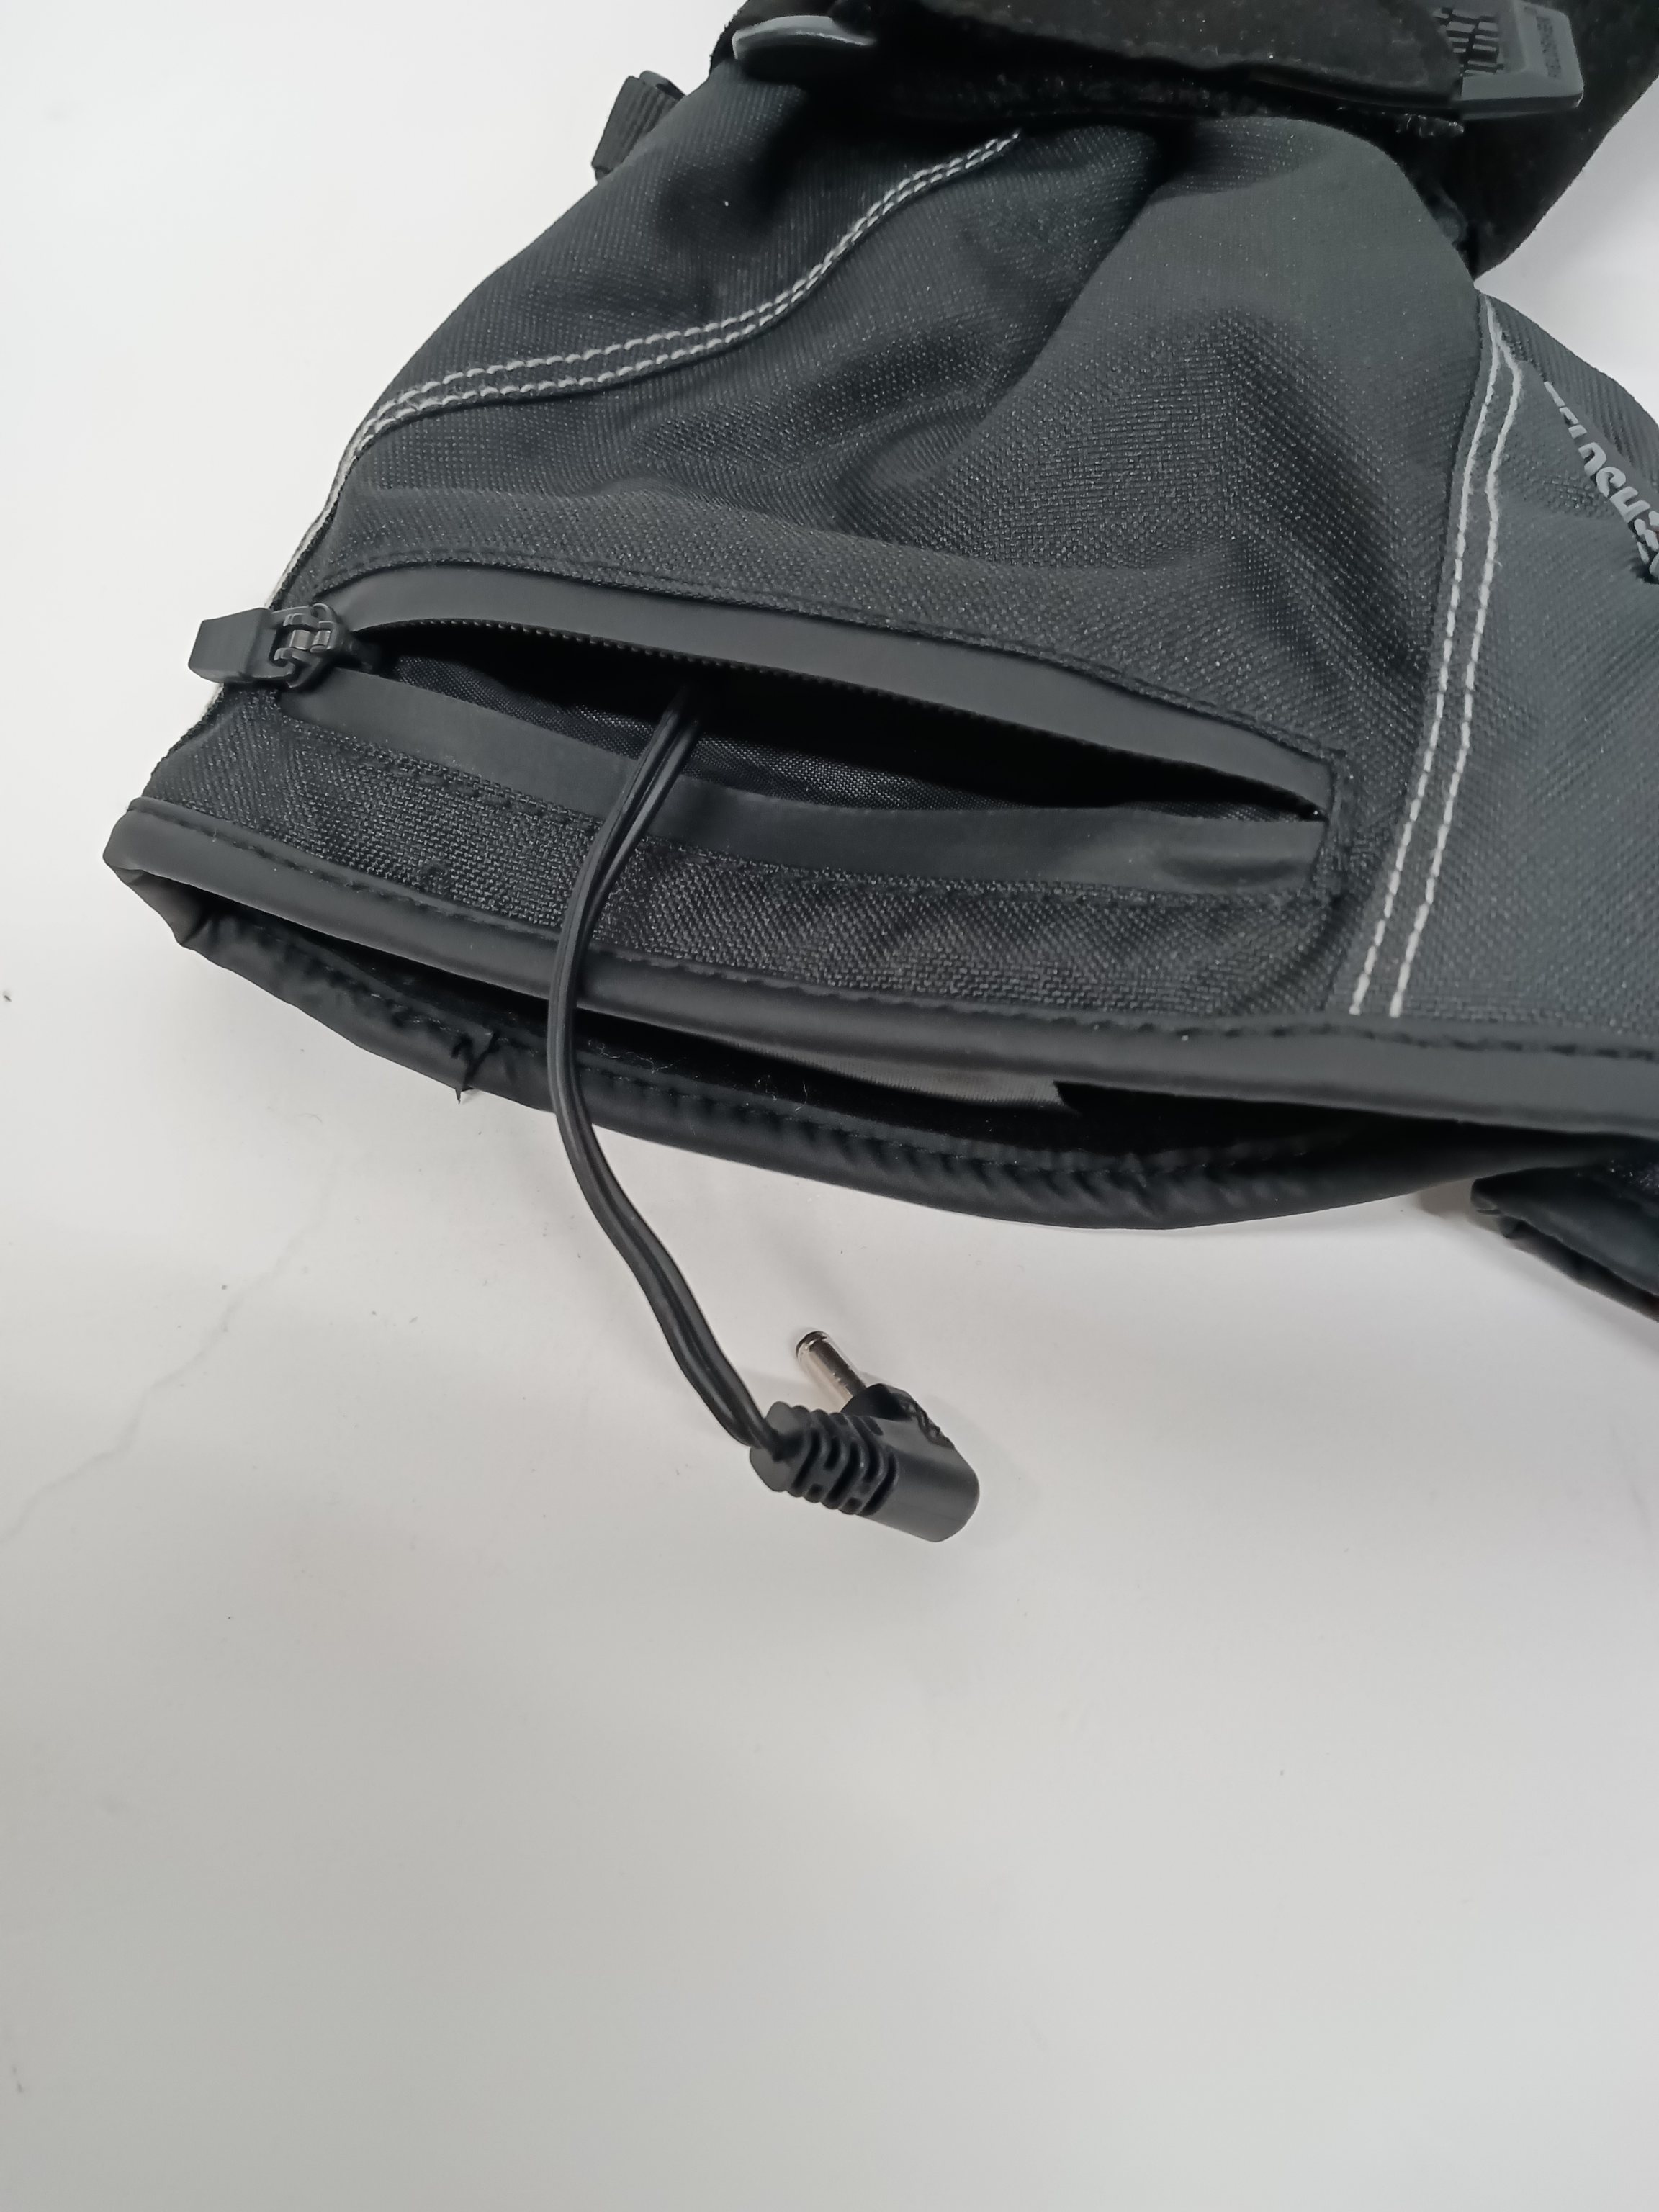  поле sia- аккумулятор заряжающийся перчатки с подогревом USB зарядка кабель отсутствует M размер черный R2312-151